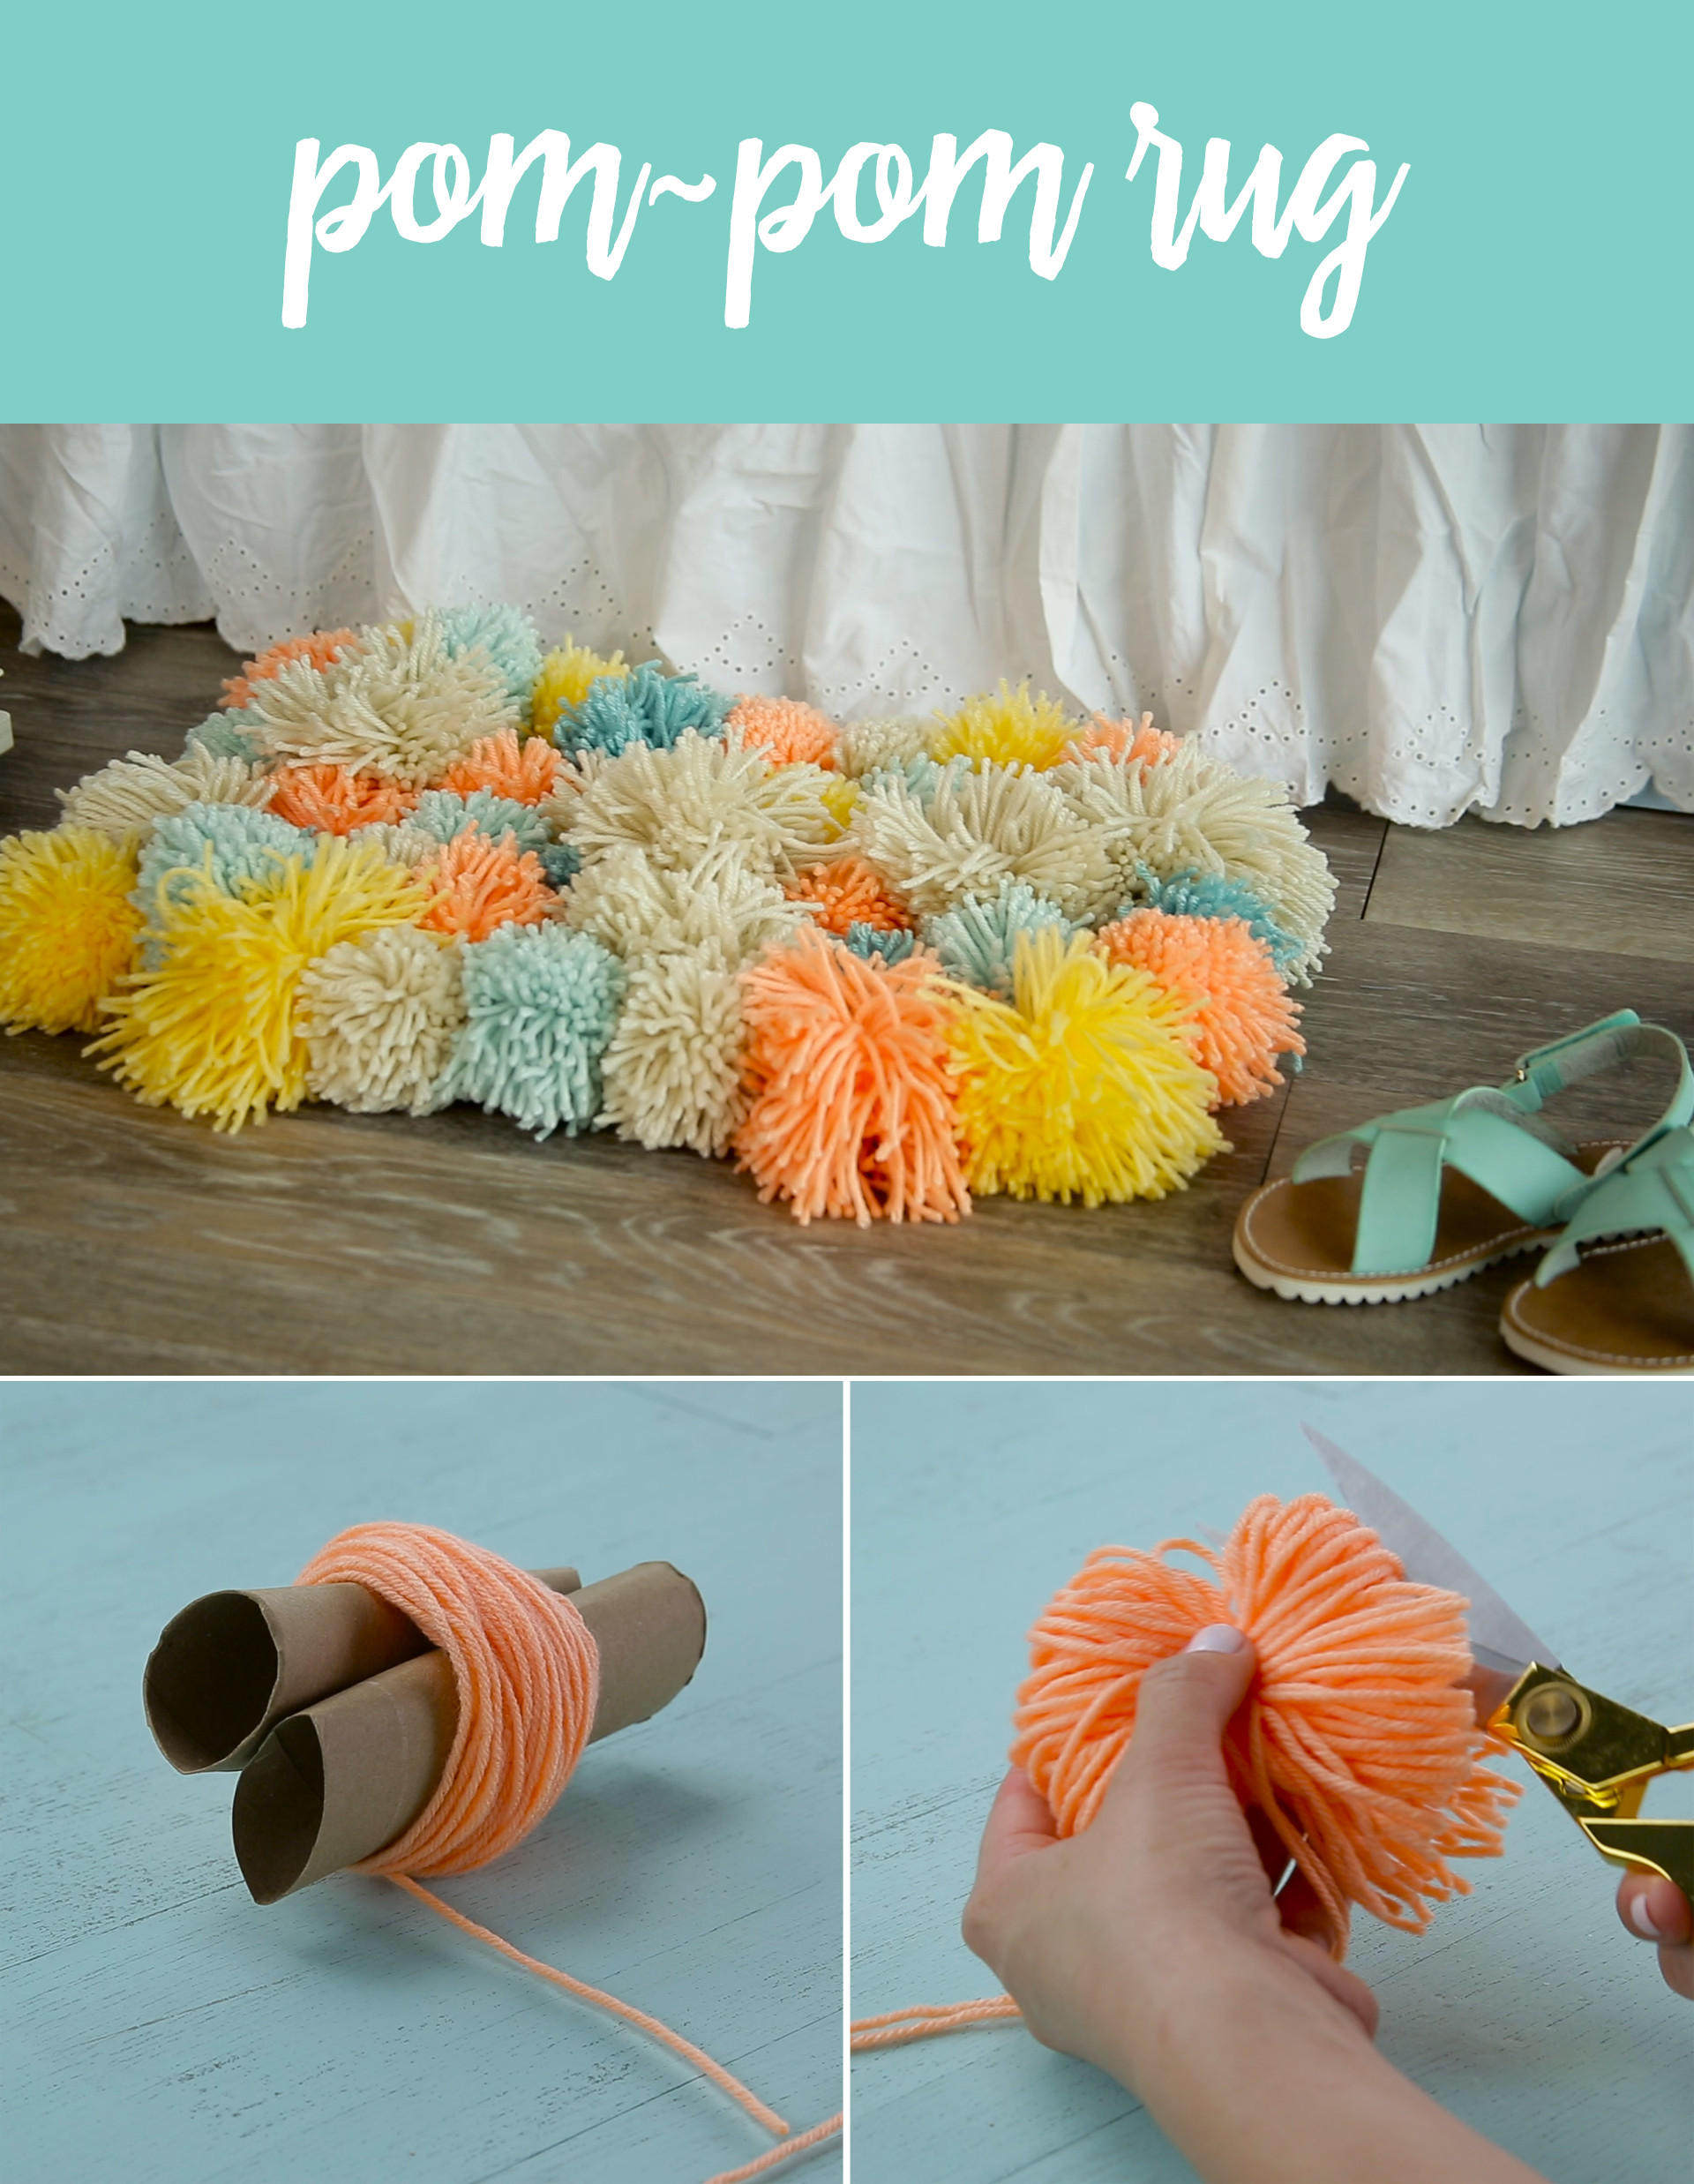 Best ideas about DIY Pom Pom
. Save or Pin DIY Pom Pom Rug Now.